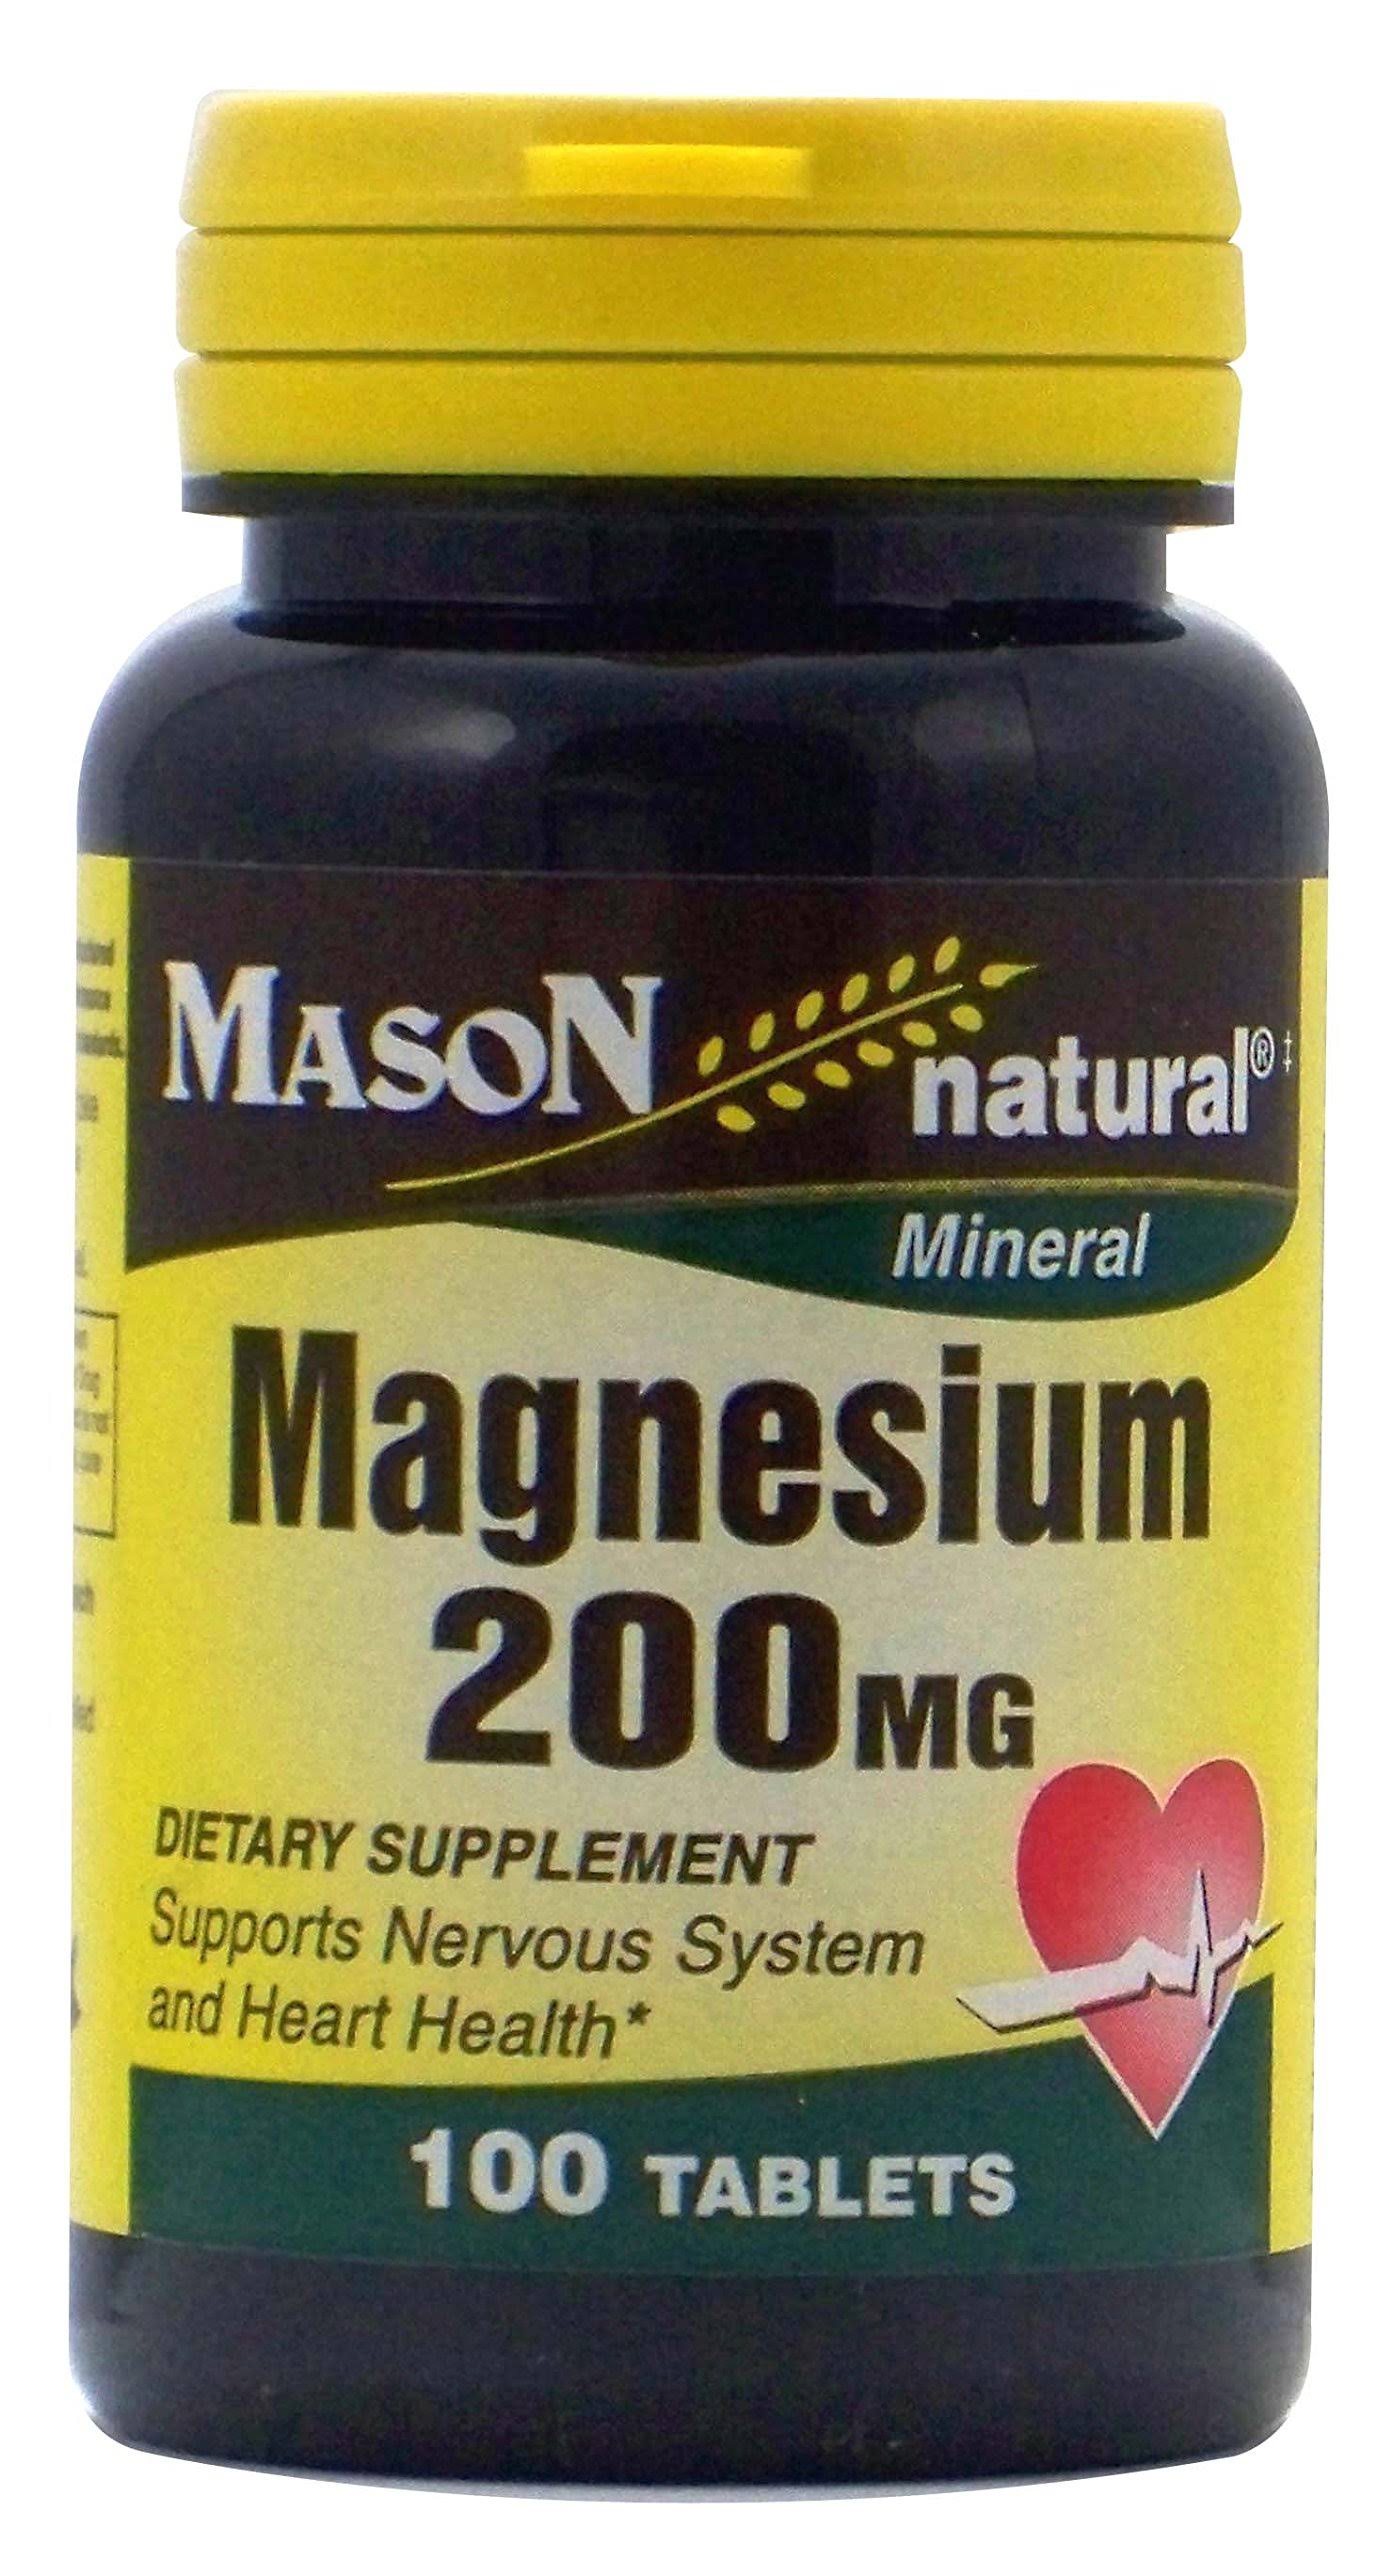 Mason Natural Magnesium - Supplement, 100 Tablets, 200mg